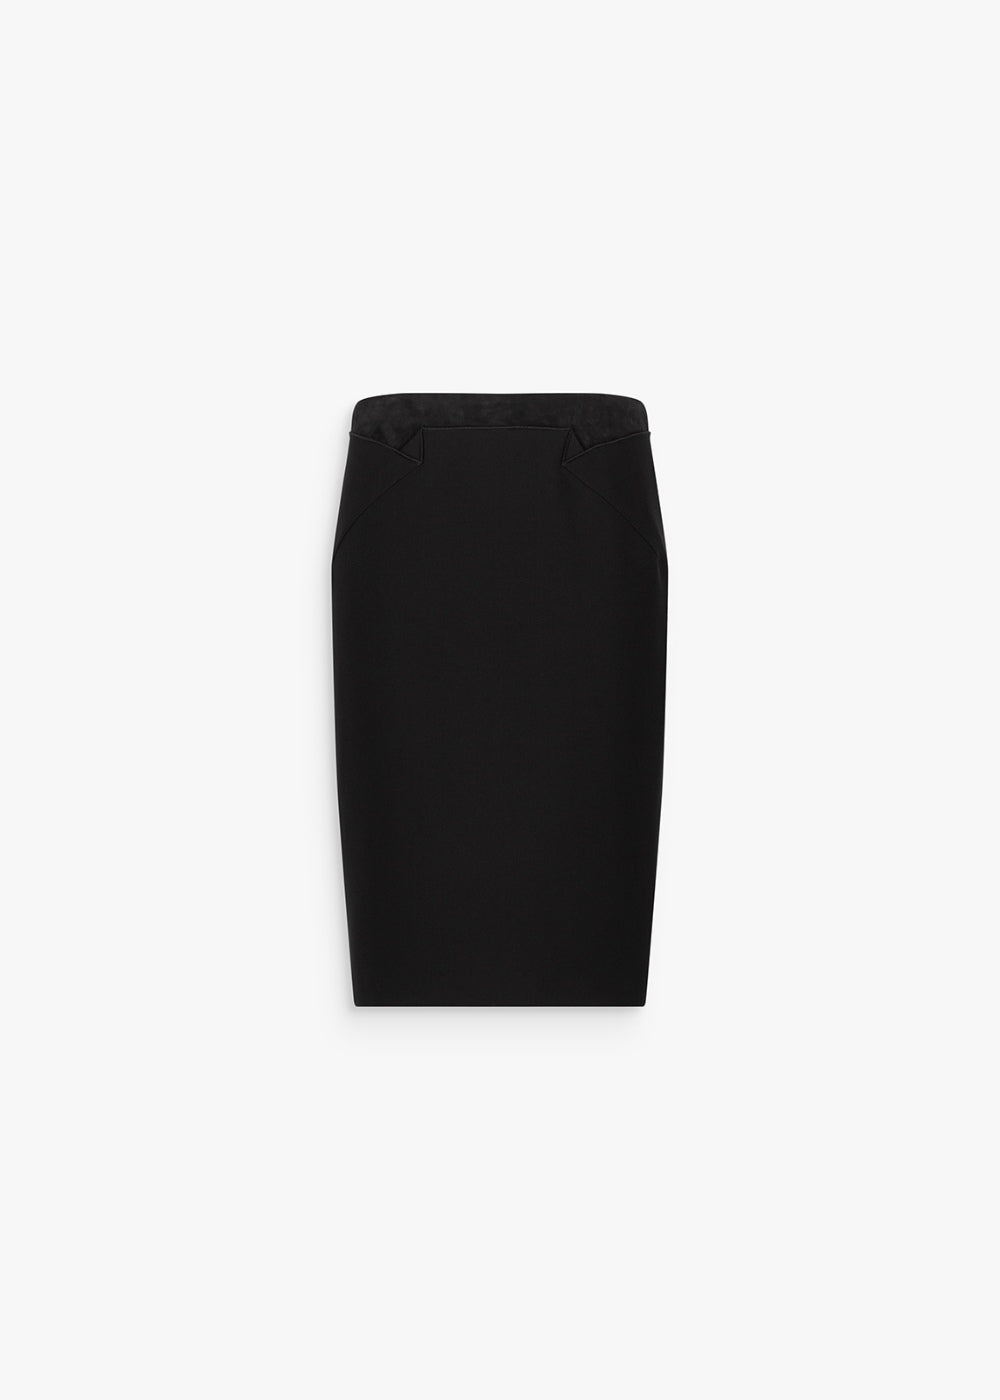 Jupe crayon bi-matière noir avec fentes arrière et détail bord daim noir